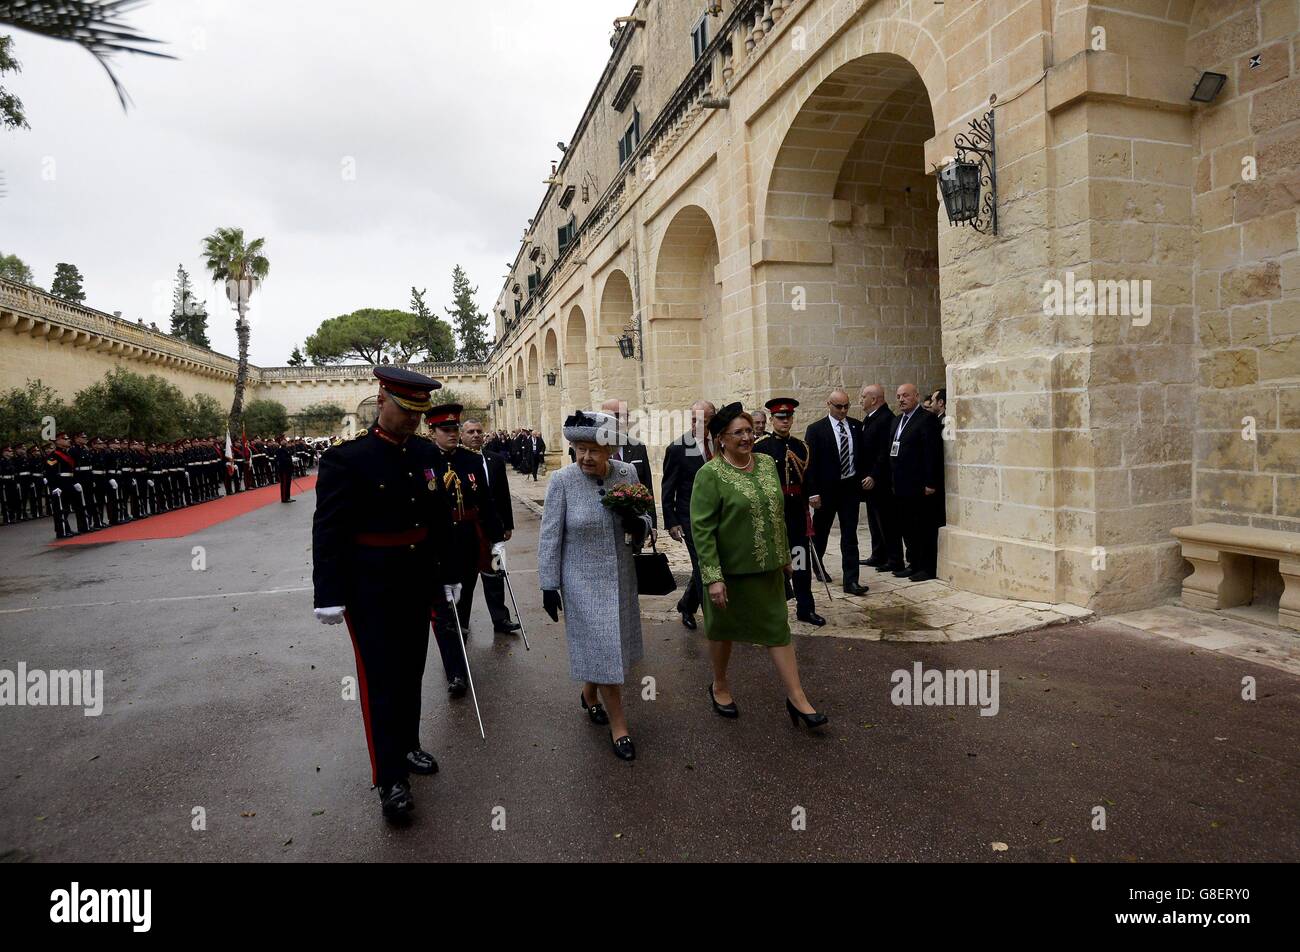 La reine Elizabeth II est accueillie par la présidente maltaise Marie Louise Coleiro alors qu'elle arrive au Palais San Anton à Attard pour la Réunion des chefs d'État du Commonwealth (CHOGM) à Malte. Banque D'Images